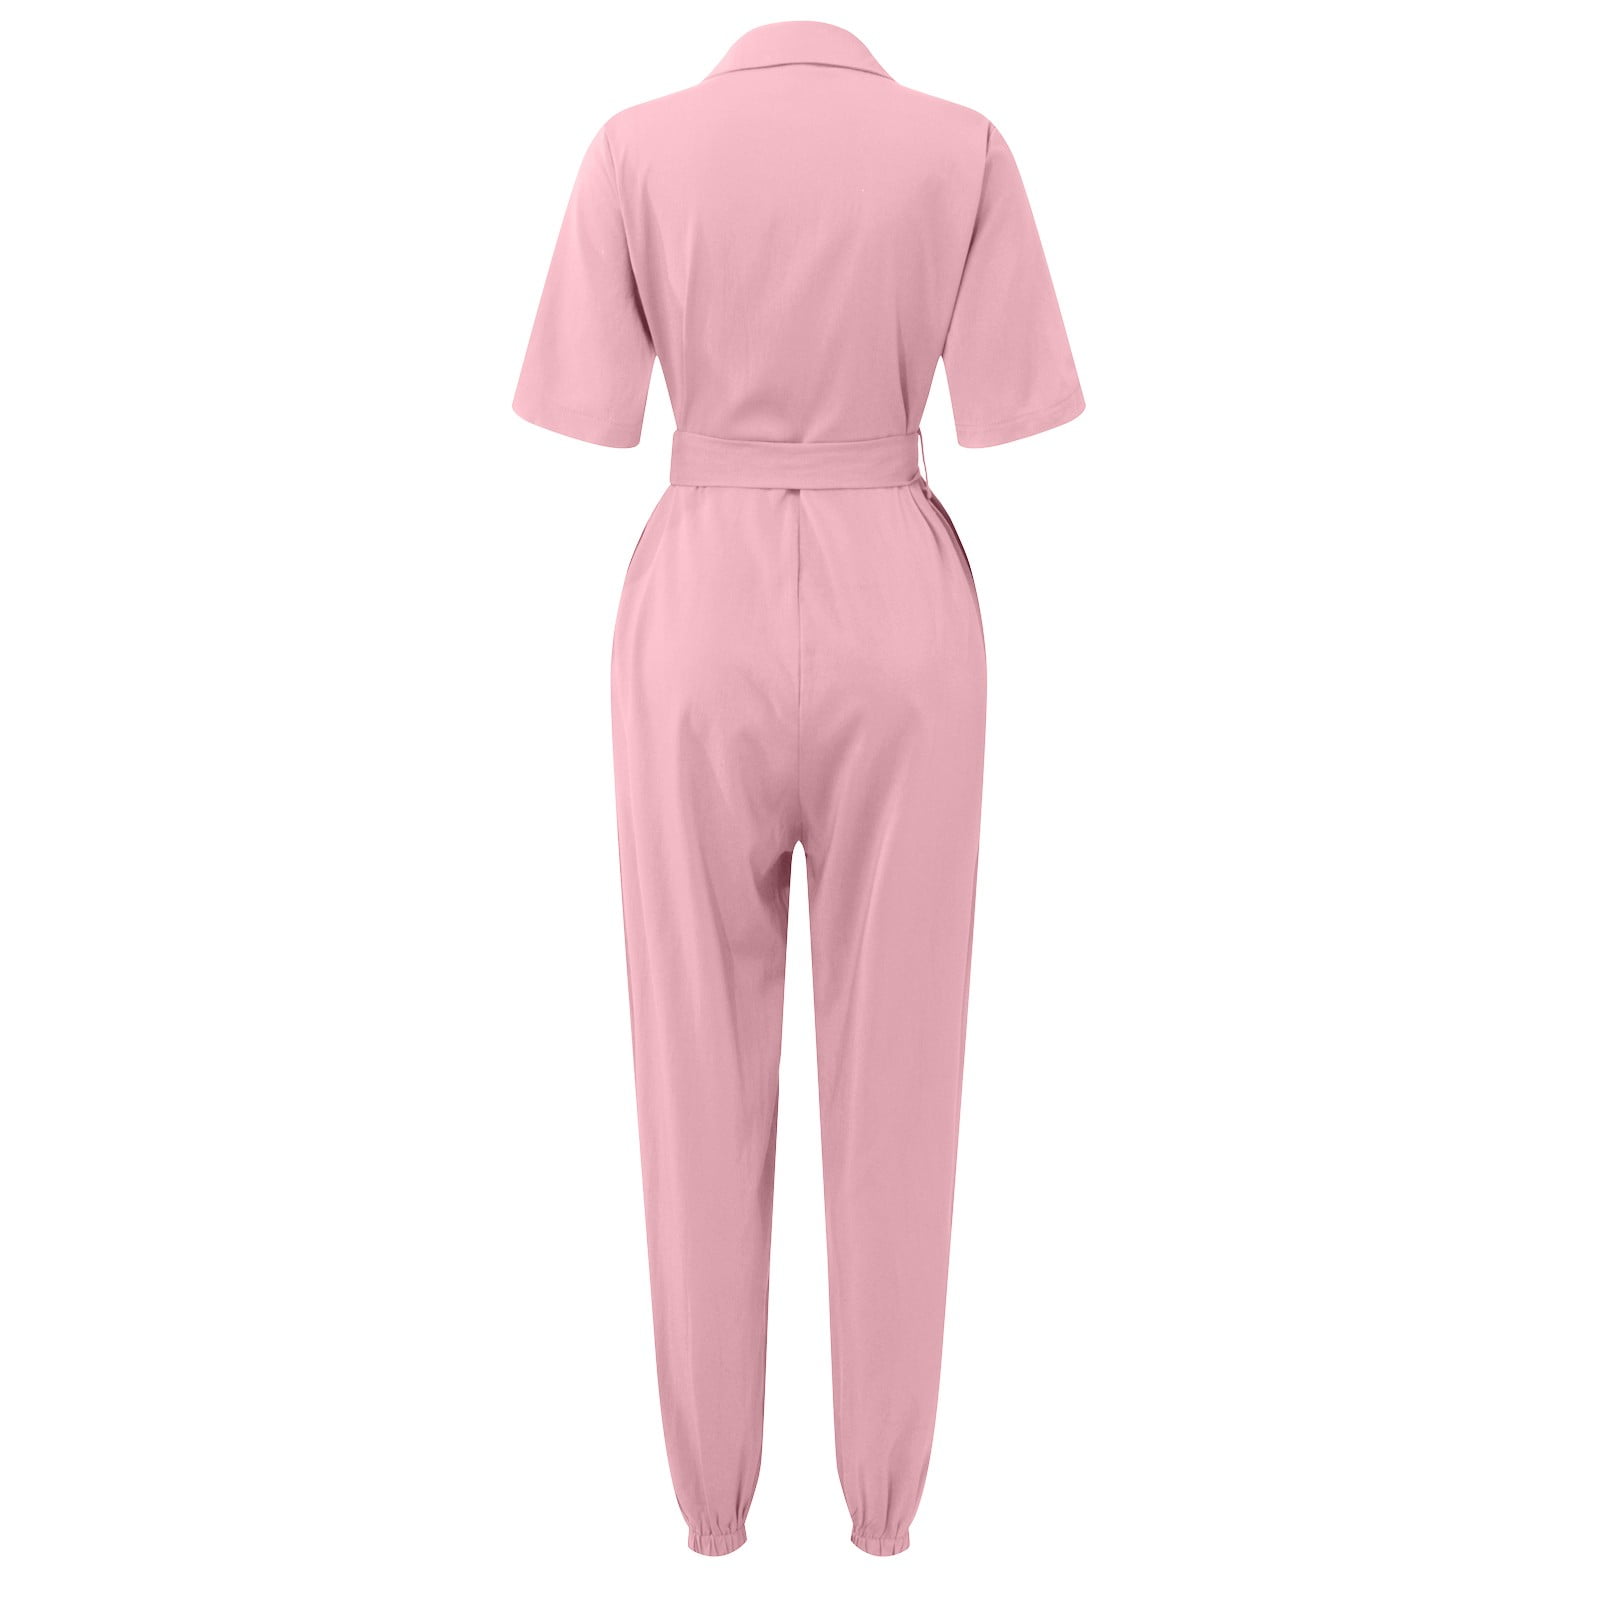 Cannon Jumpsuit ~ Pink Denim | Pink jumpsuit, Jumpsuit, Outfits